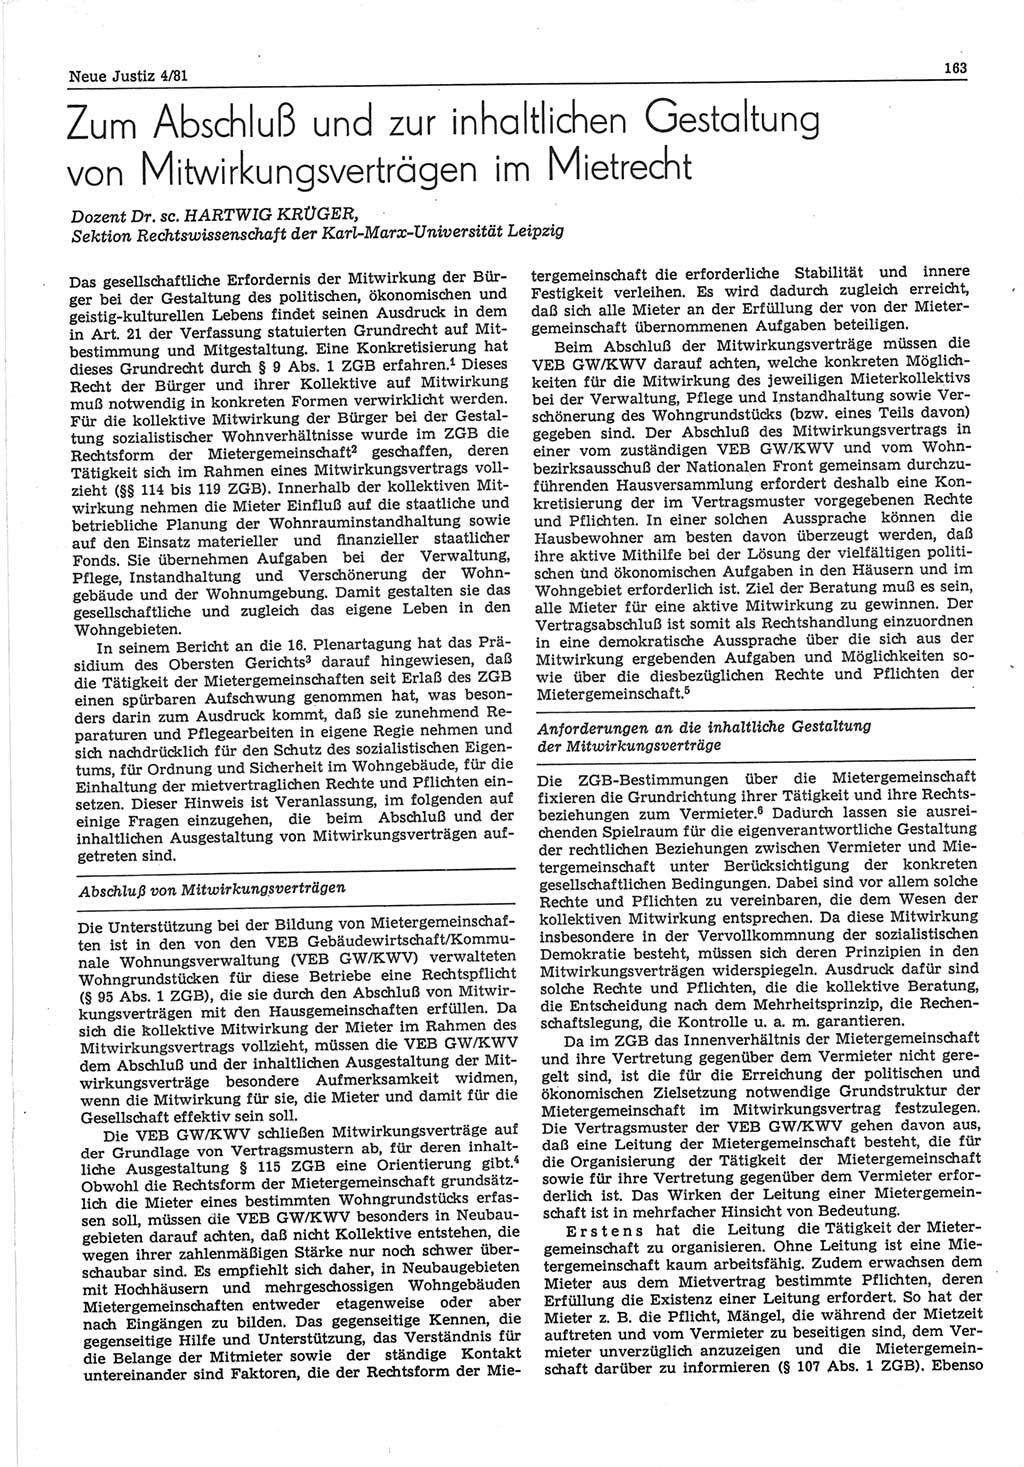 Neue Justiz (NJ), Zeitschrift für sozialistisches Recht und Gesetzlichkeit [Deutsche Demokratische Republik (DDR)], 35. Jahrgang 1981, Seite 163 (NJ DDR 1981, S. 163)